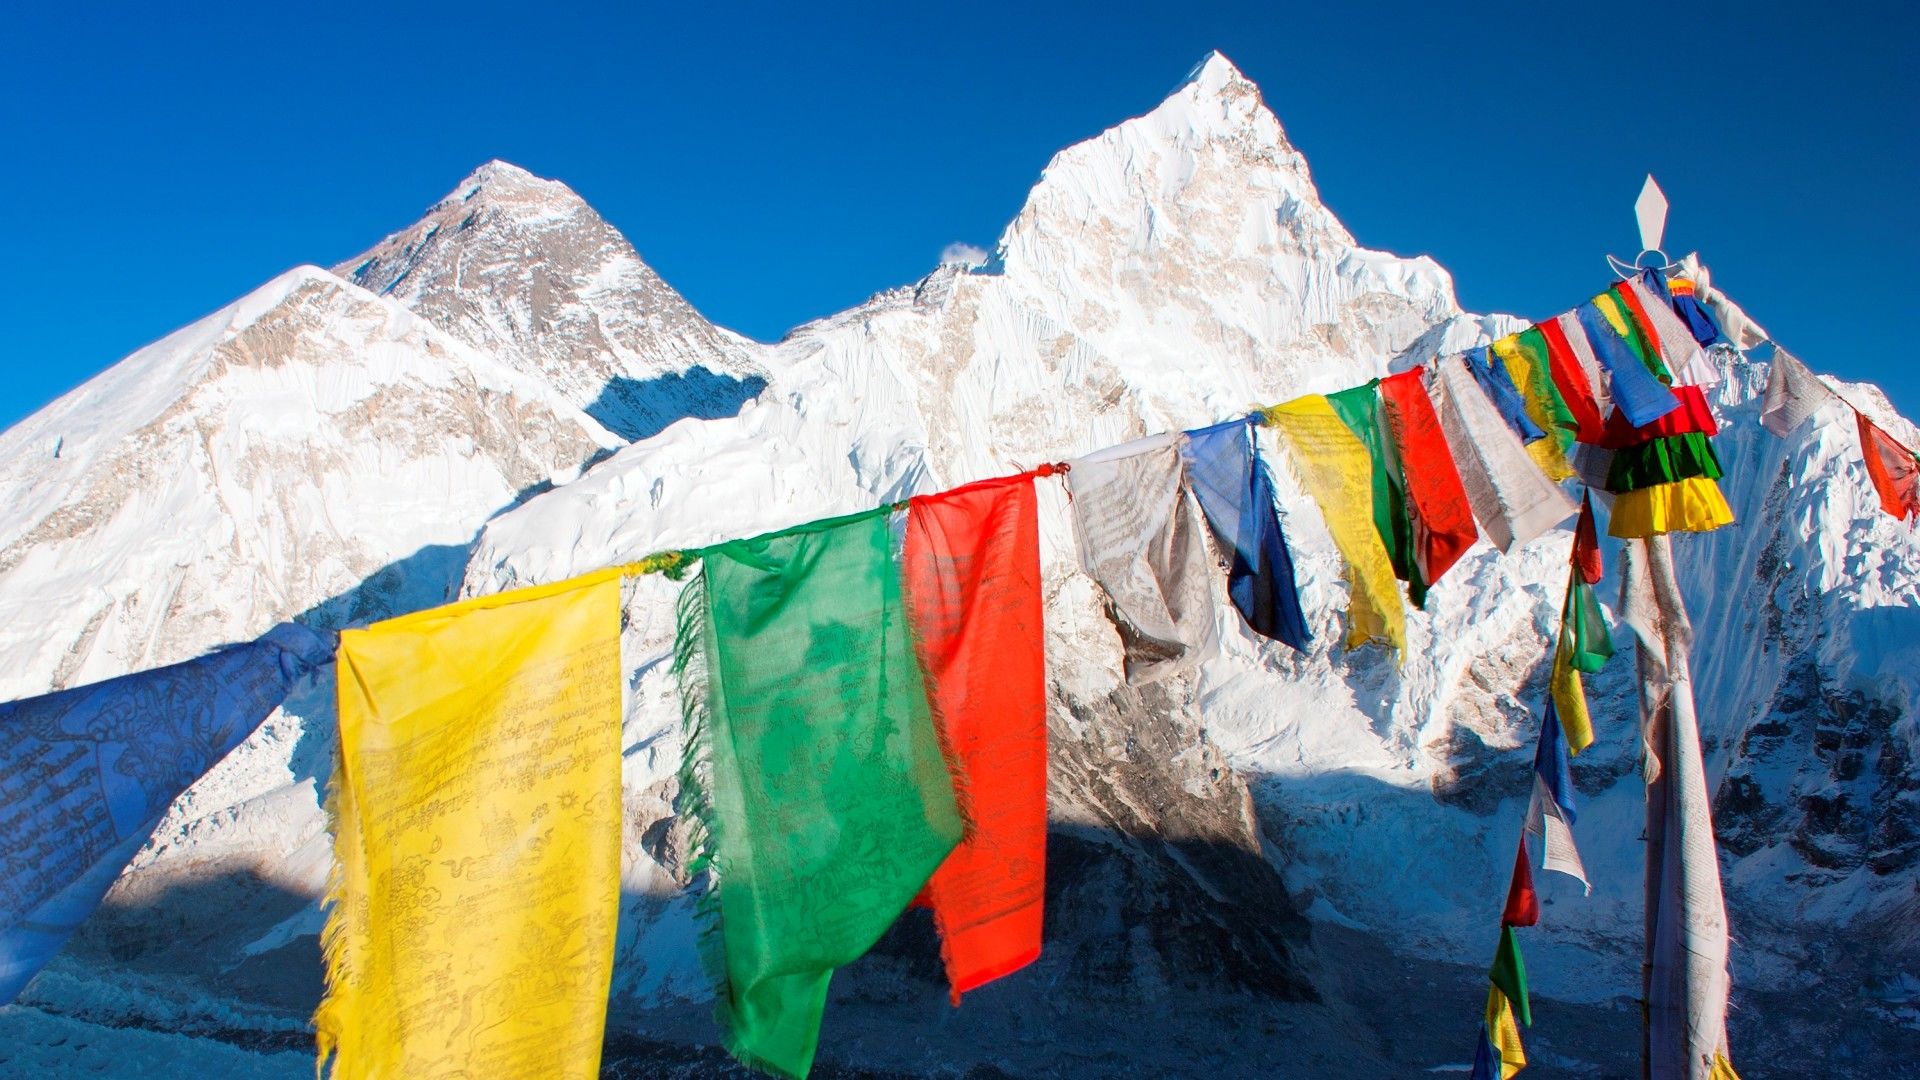 Nepál - Everest Base Camp trek